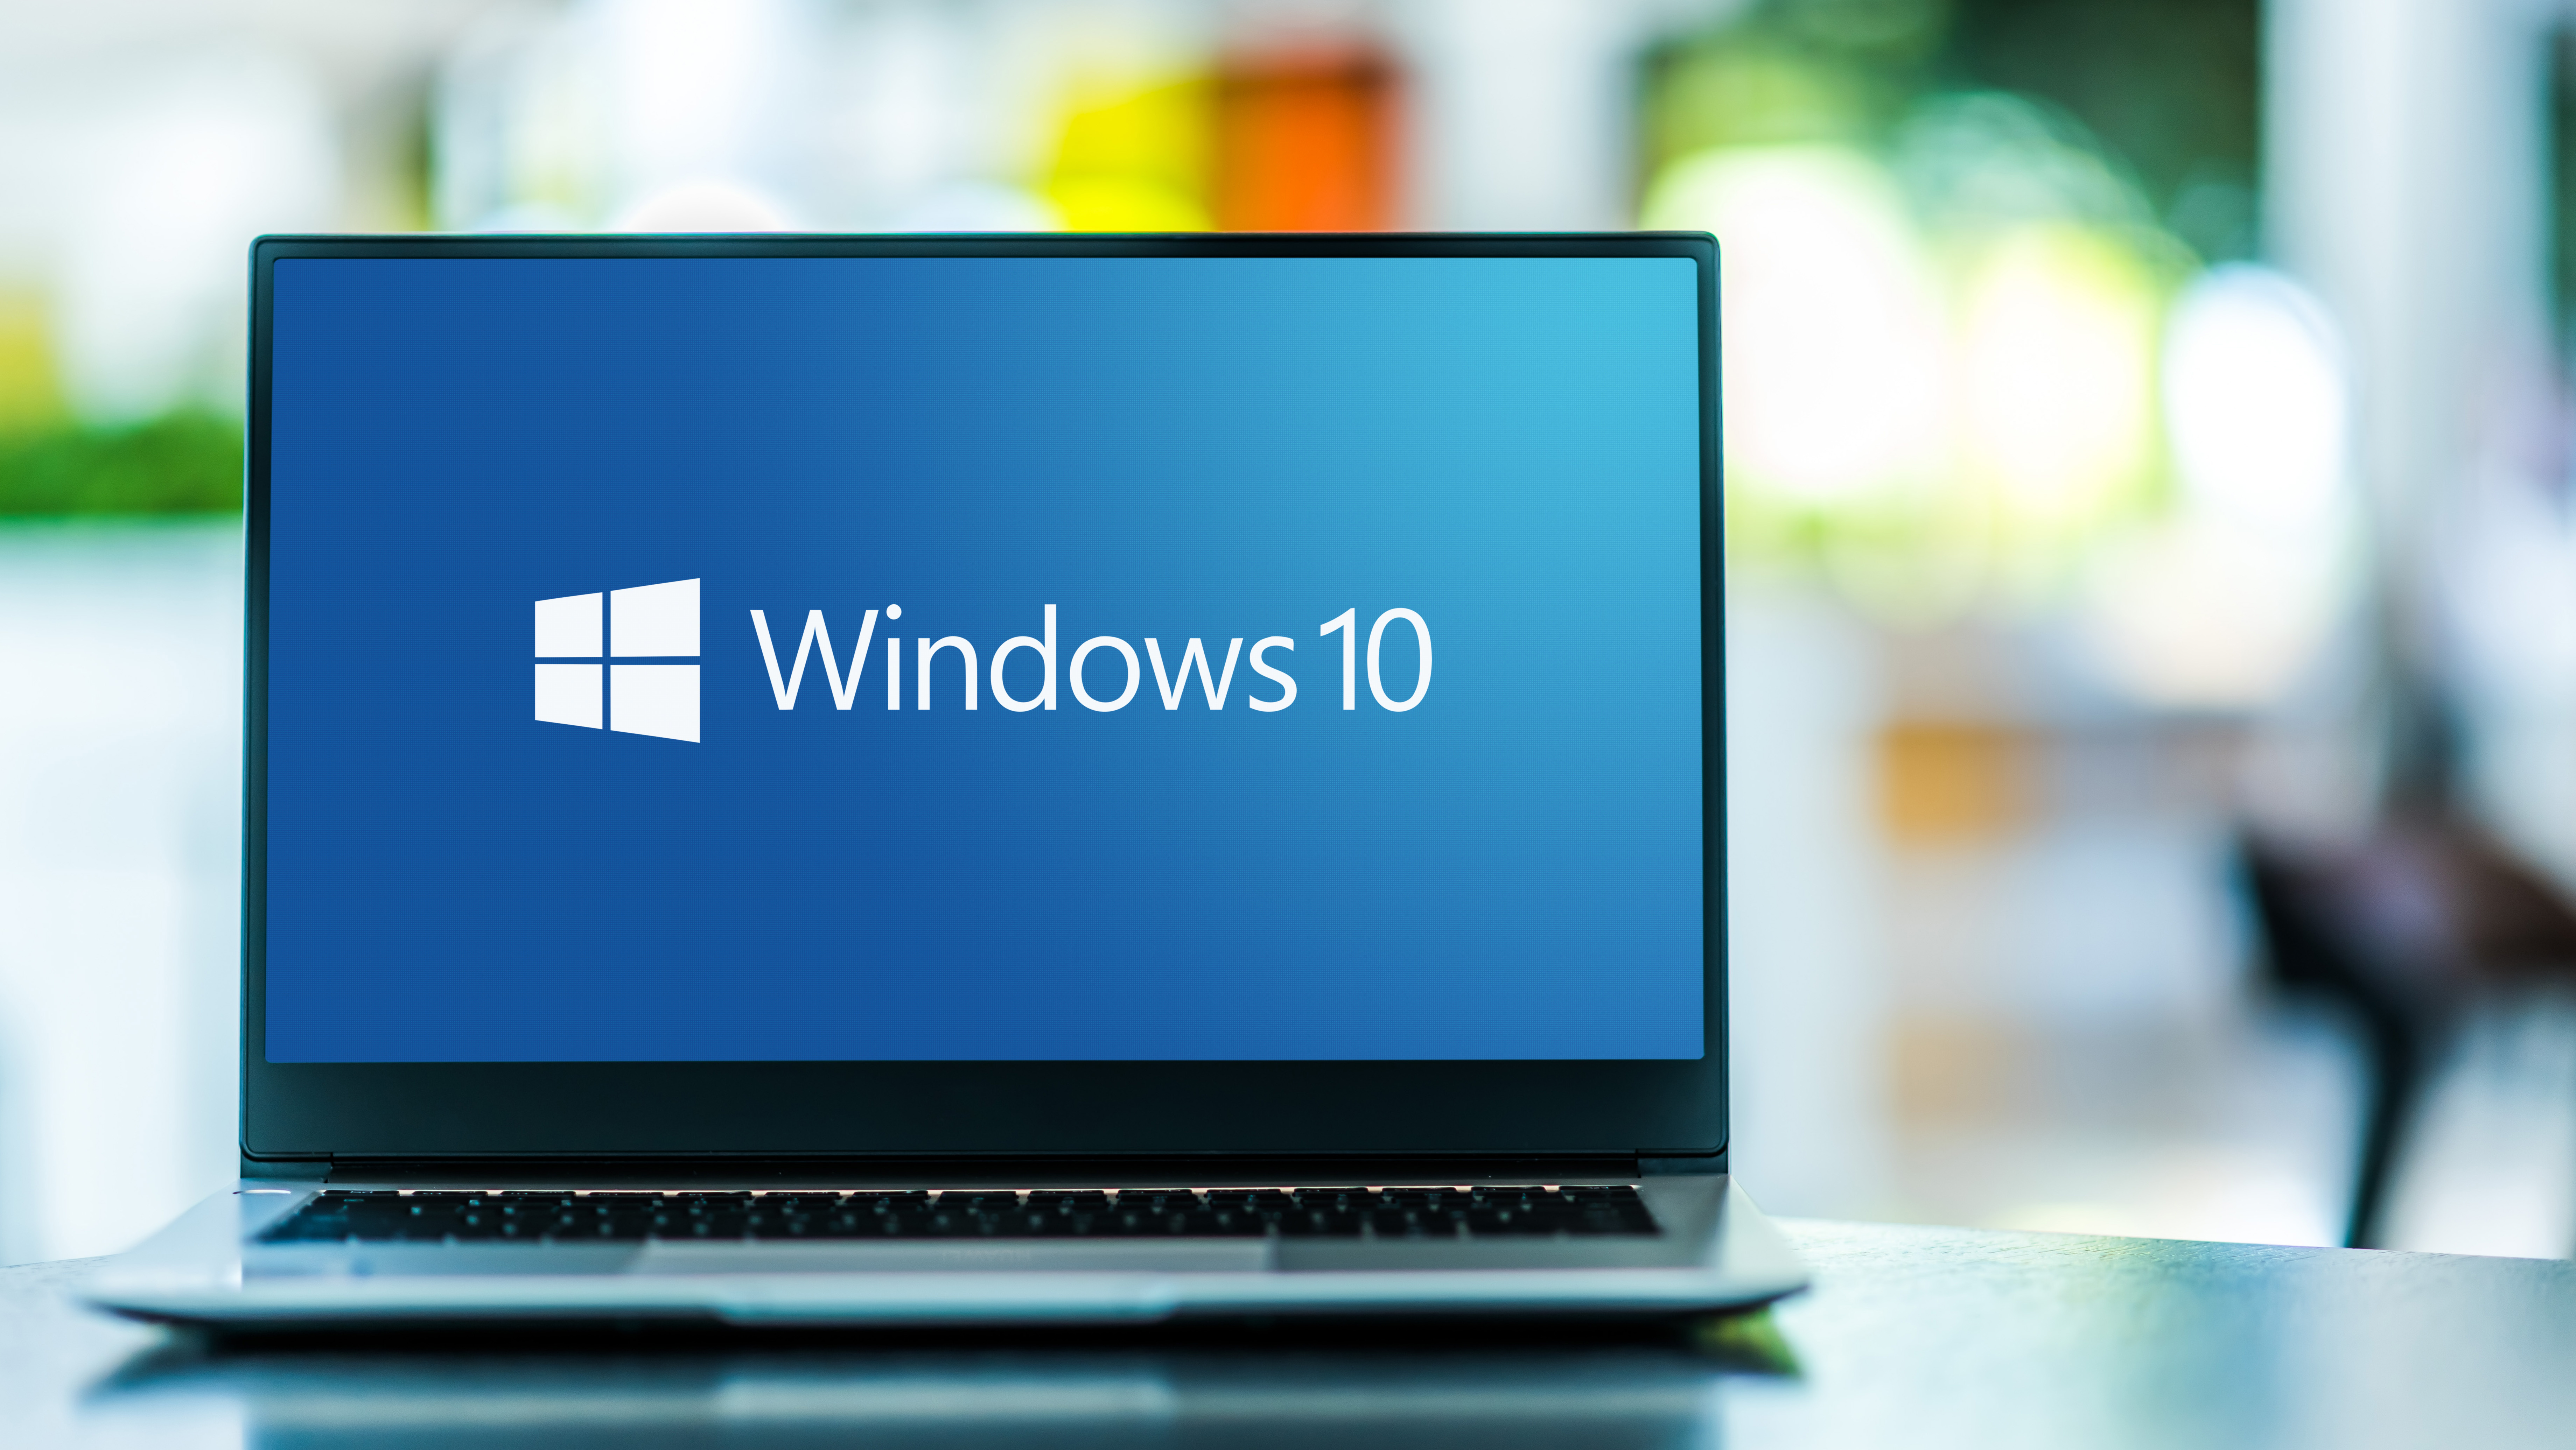 windows 10 on laptop